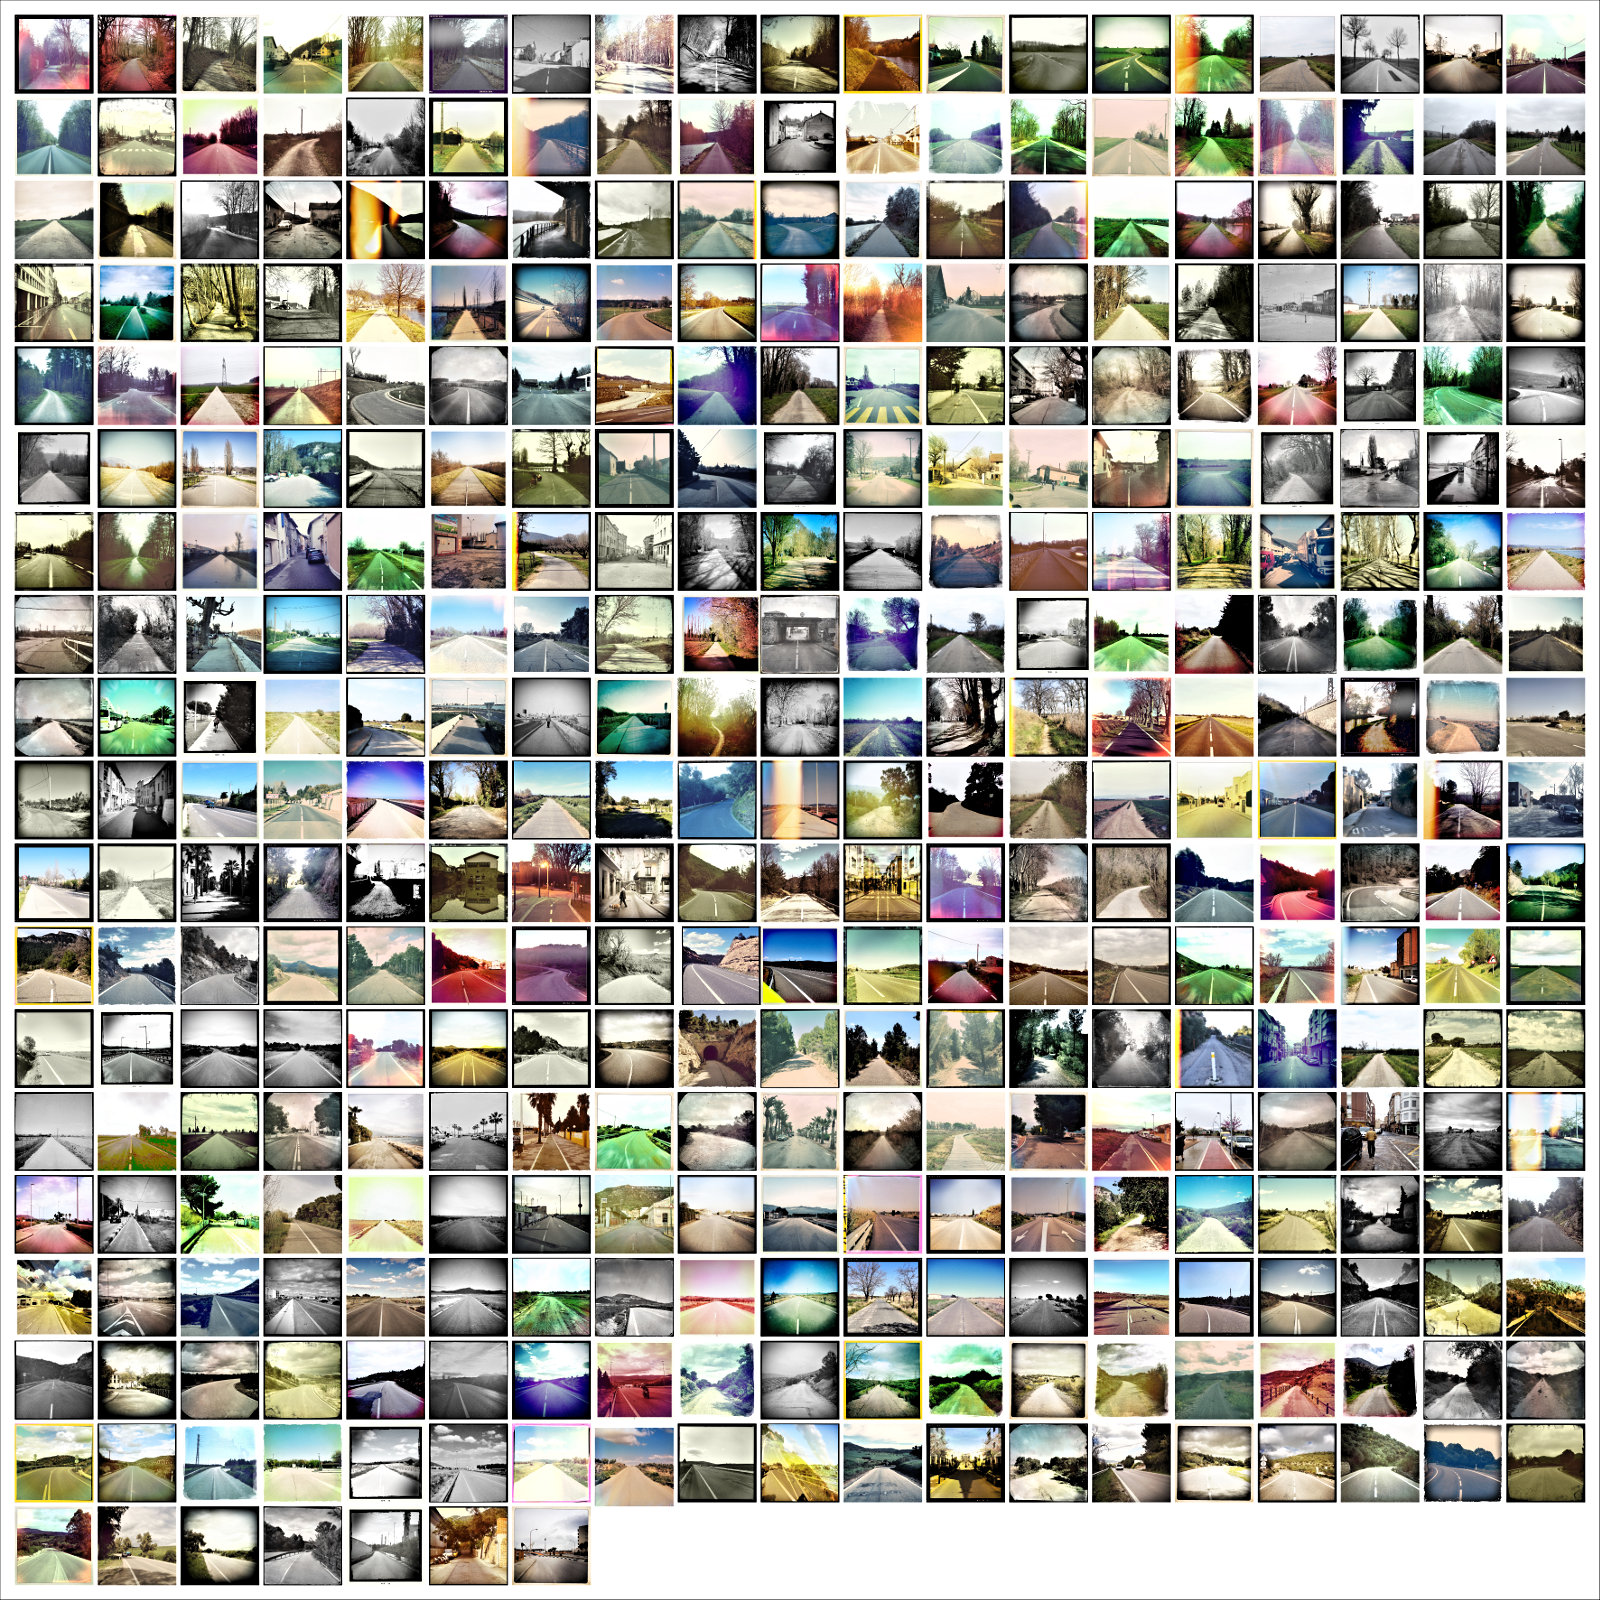 349 quadratische Straßenfotos auf einer Bildcollage arrangiert